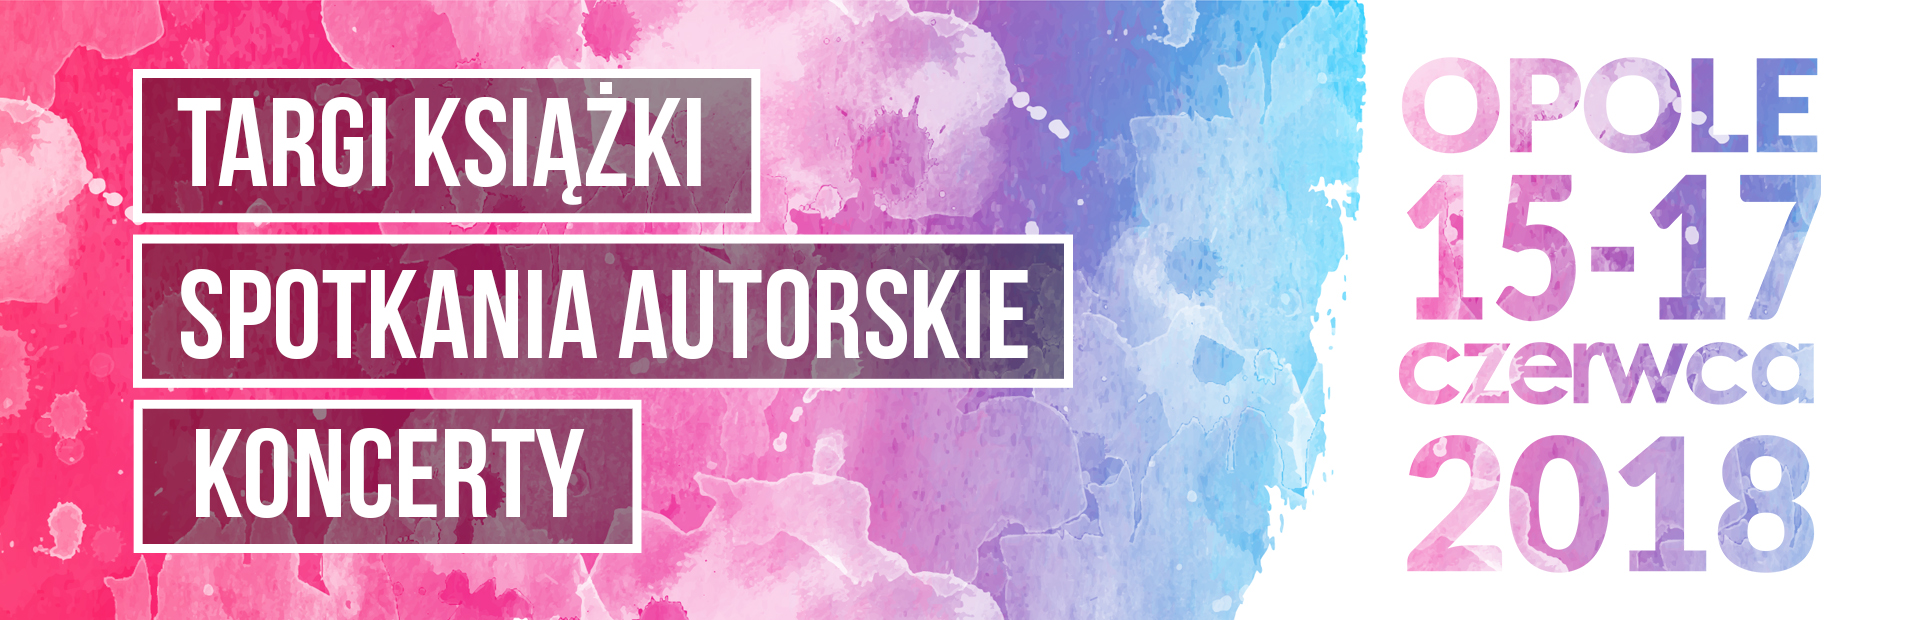 III Festiwal Książki - zobacz, co w programie!